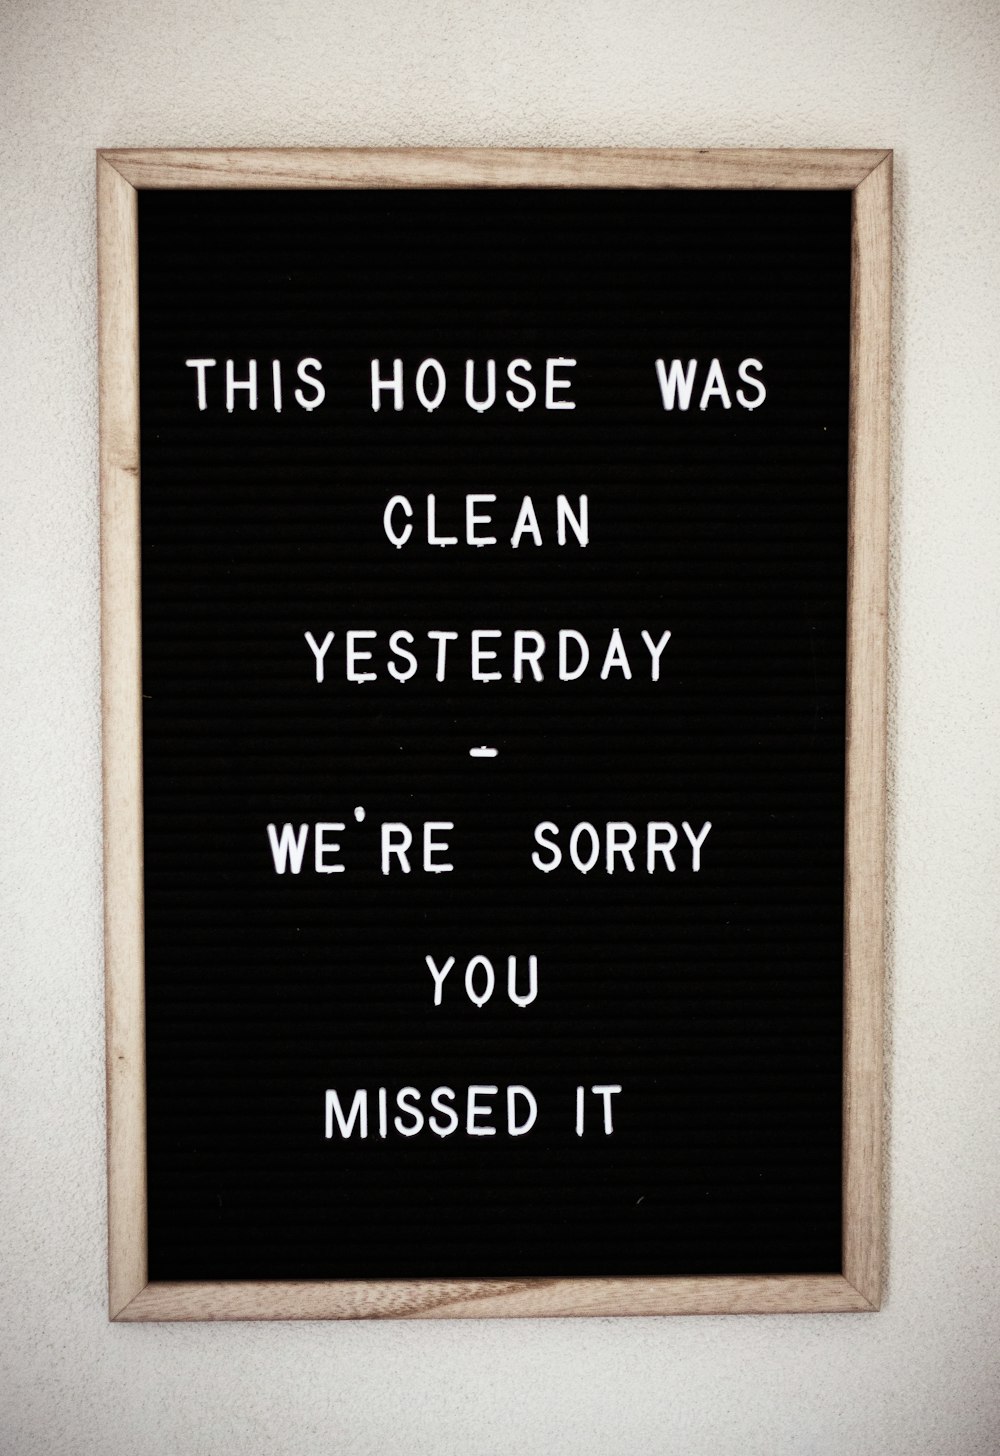 Esta casa estaba limpia ayer, lamentamos que te la hayas perdido.